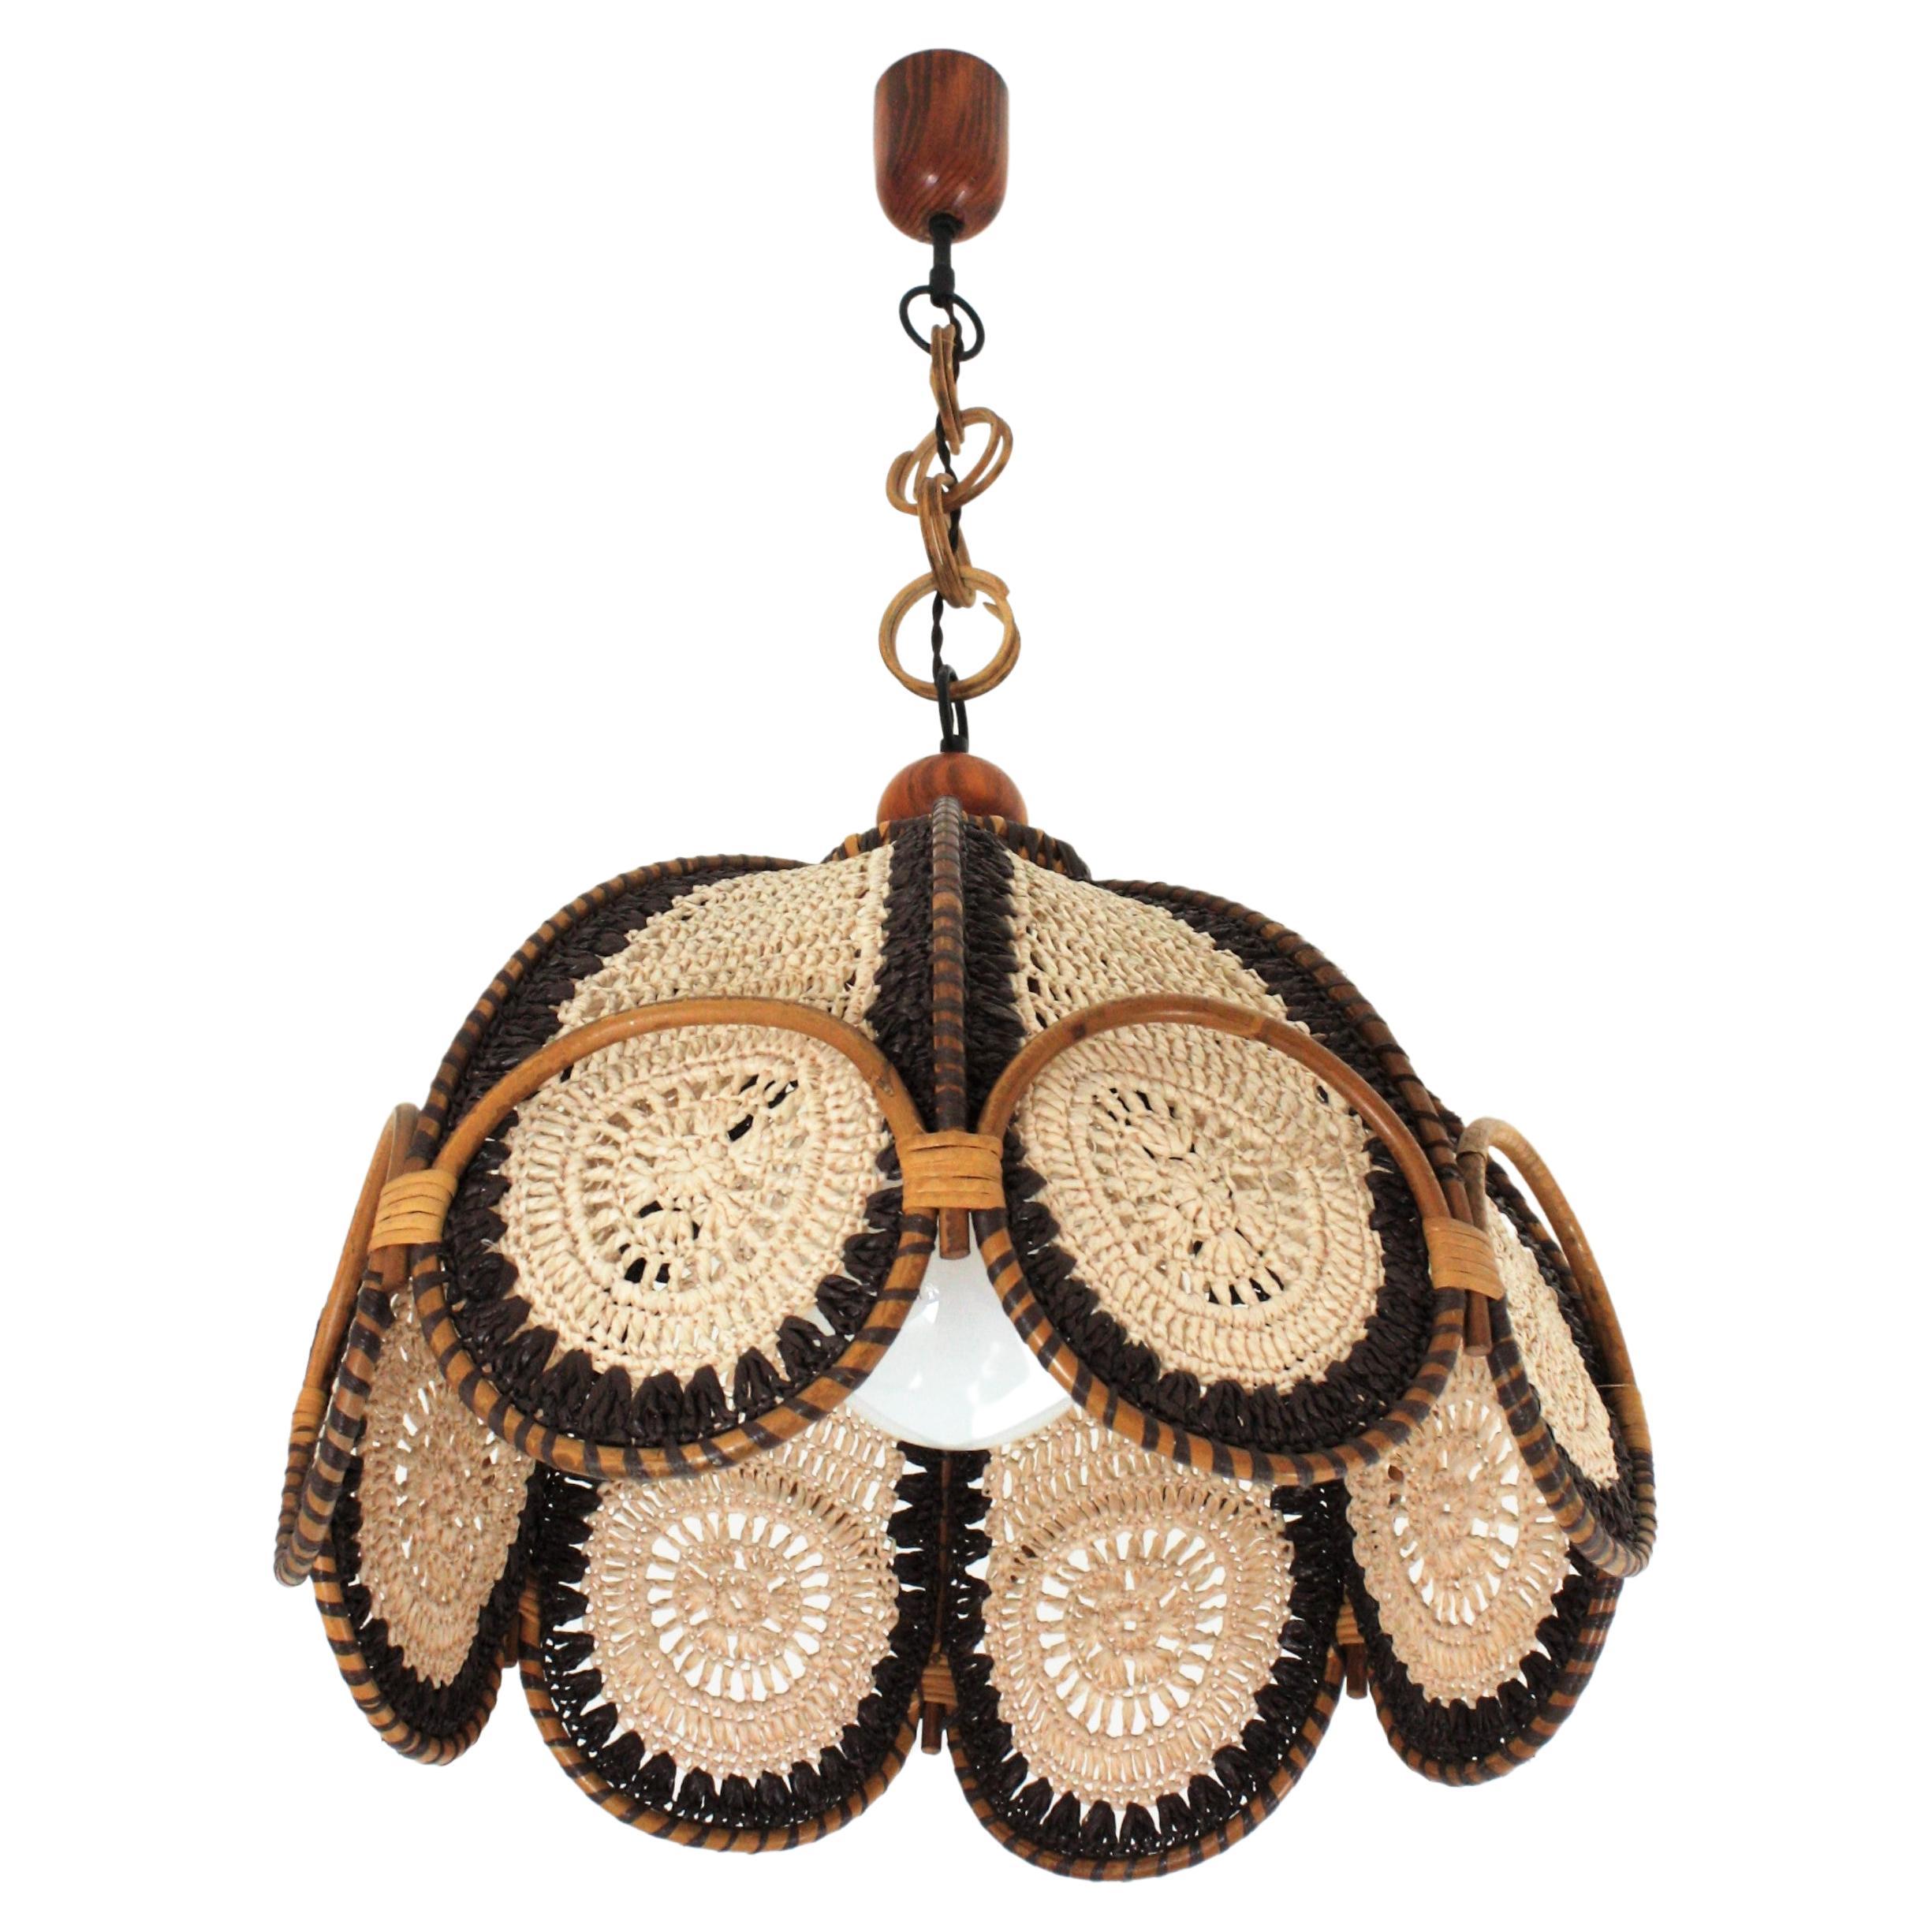 Lampe pendante en macramé beige et marron avec anneaux en rotin, de style moderniste espagnol